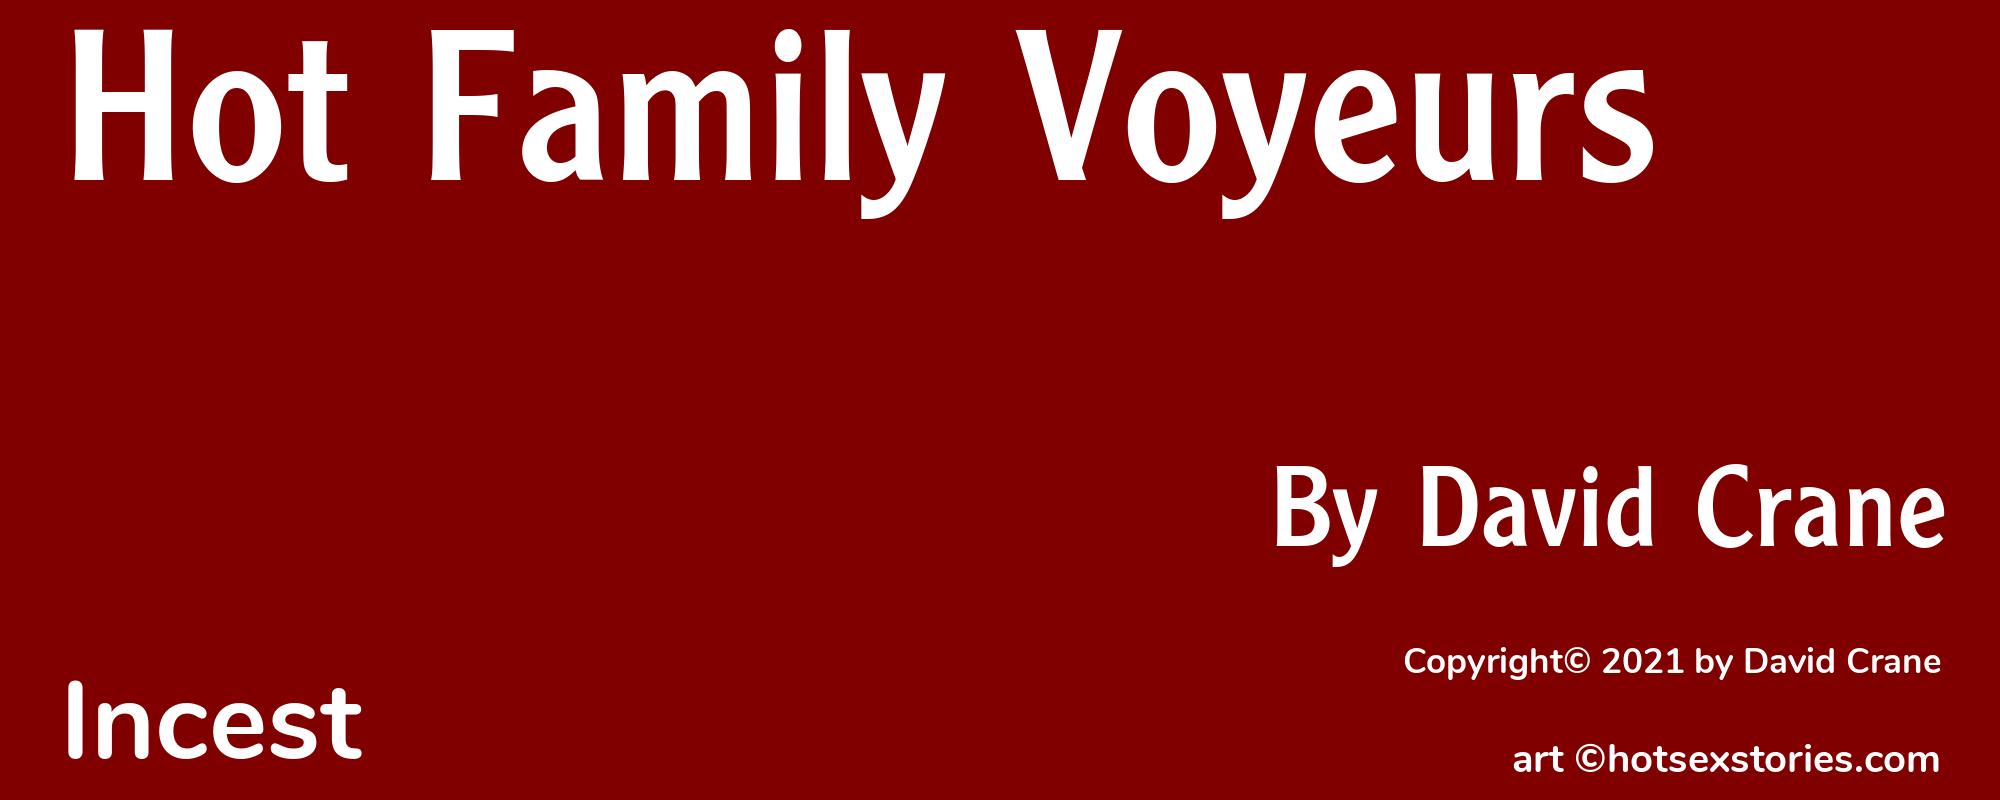 Hot Family Voyeurs - Cover